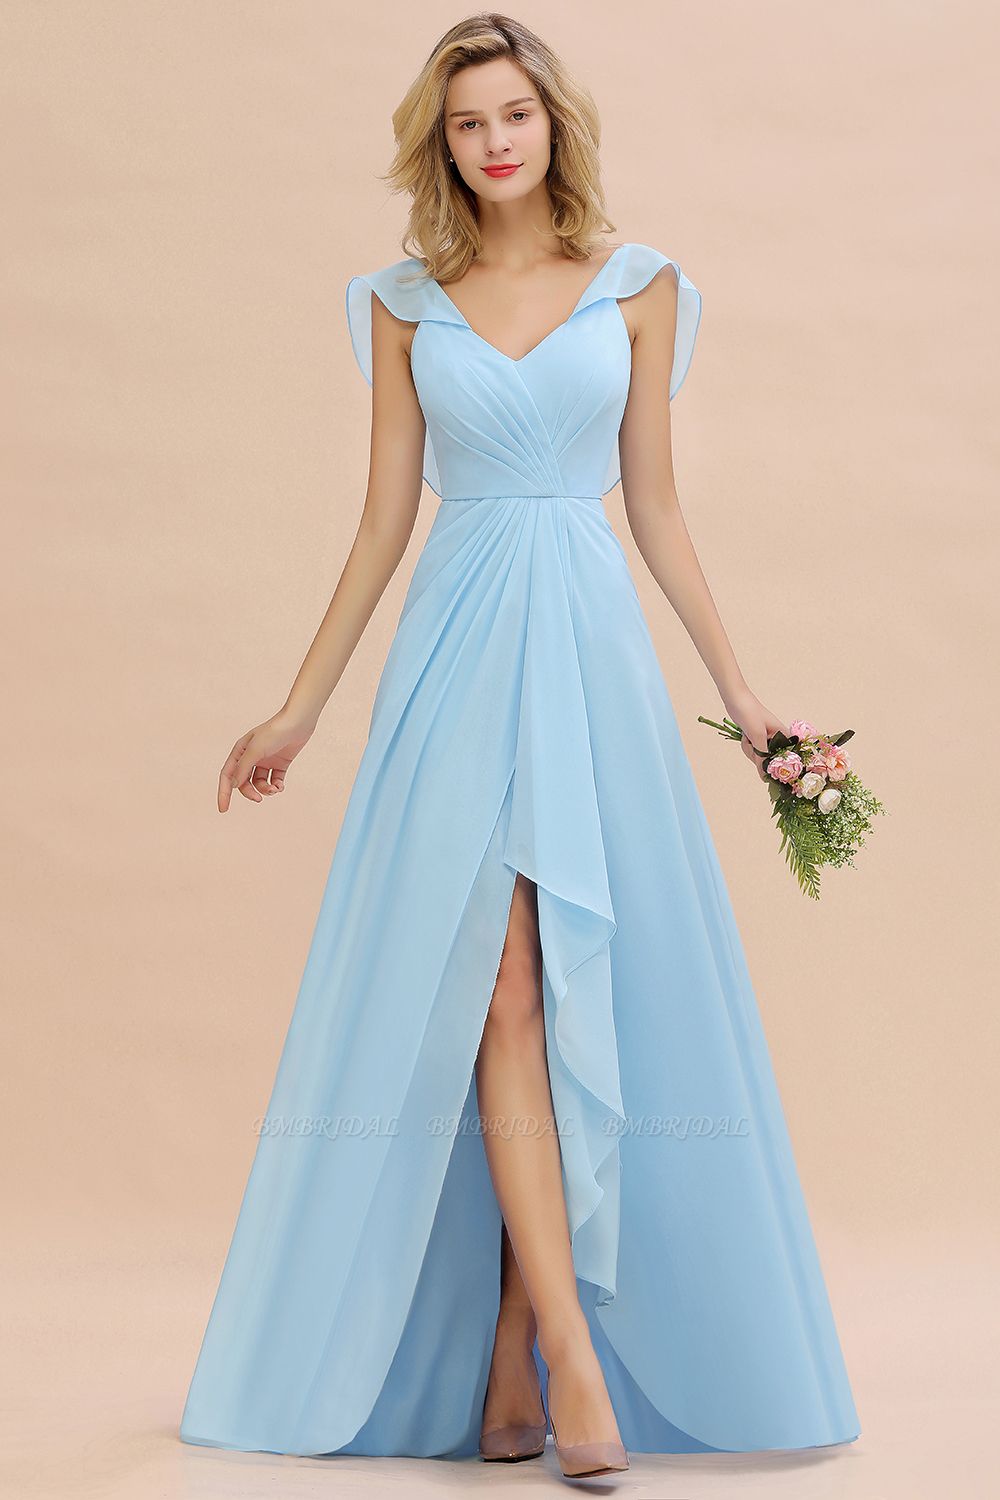 BMbridal Modest Hi-Lo V-Neck Ruffle Long Bridesmaid Dress with Slit